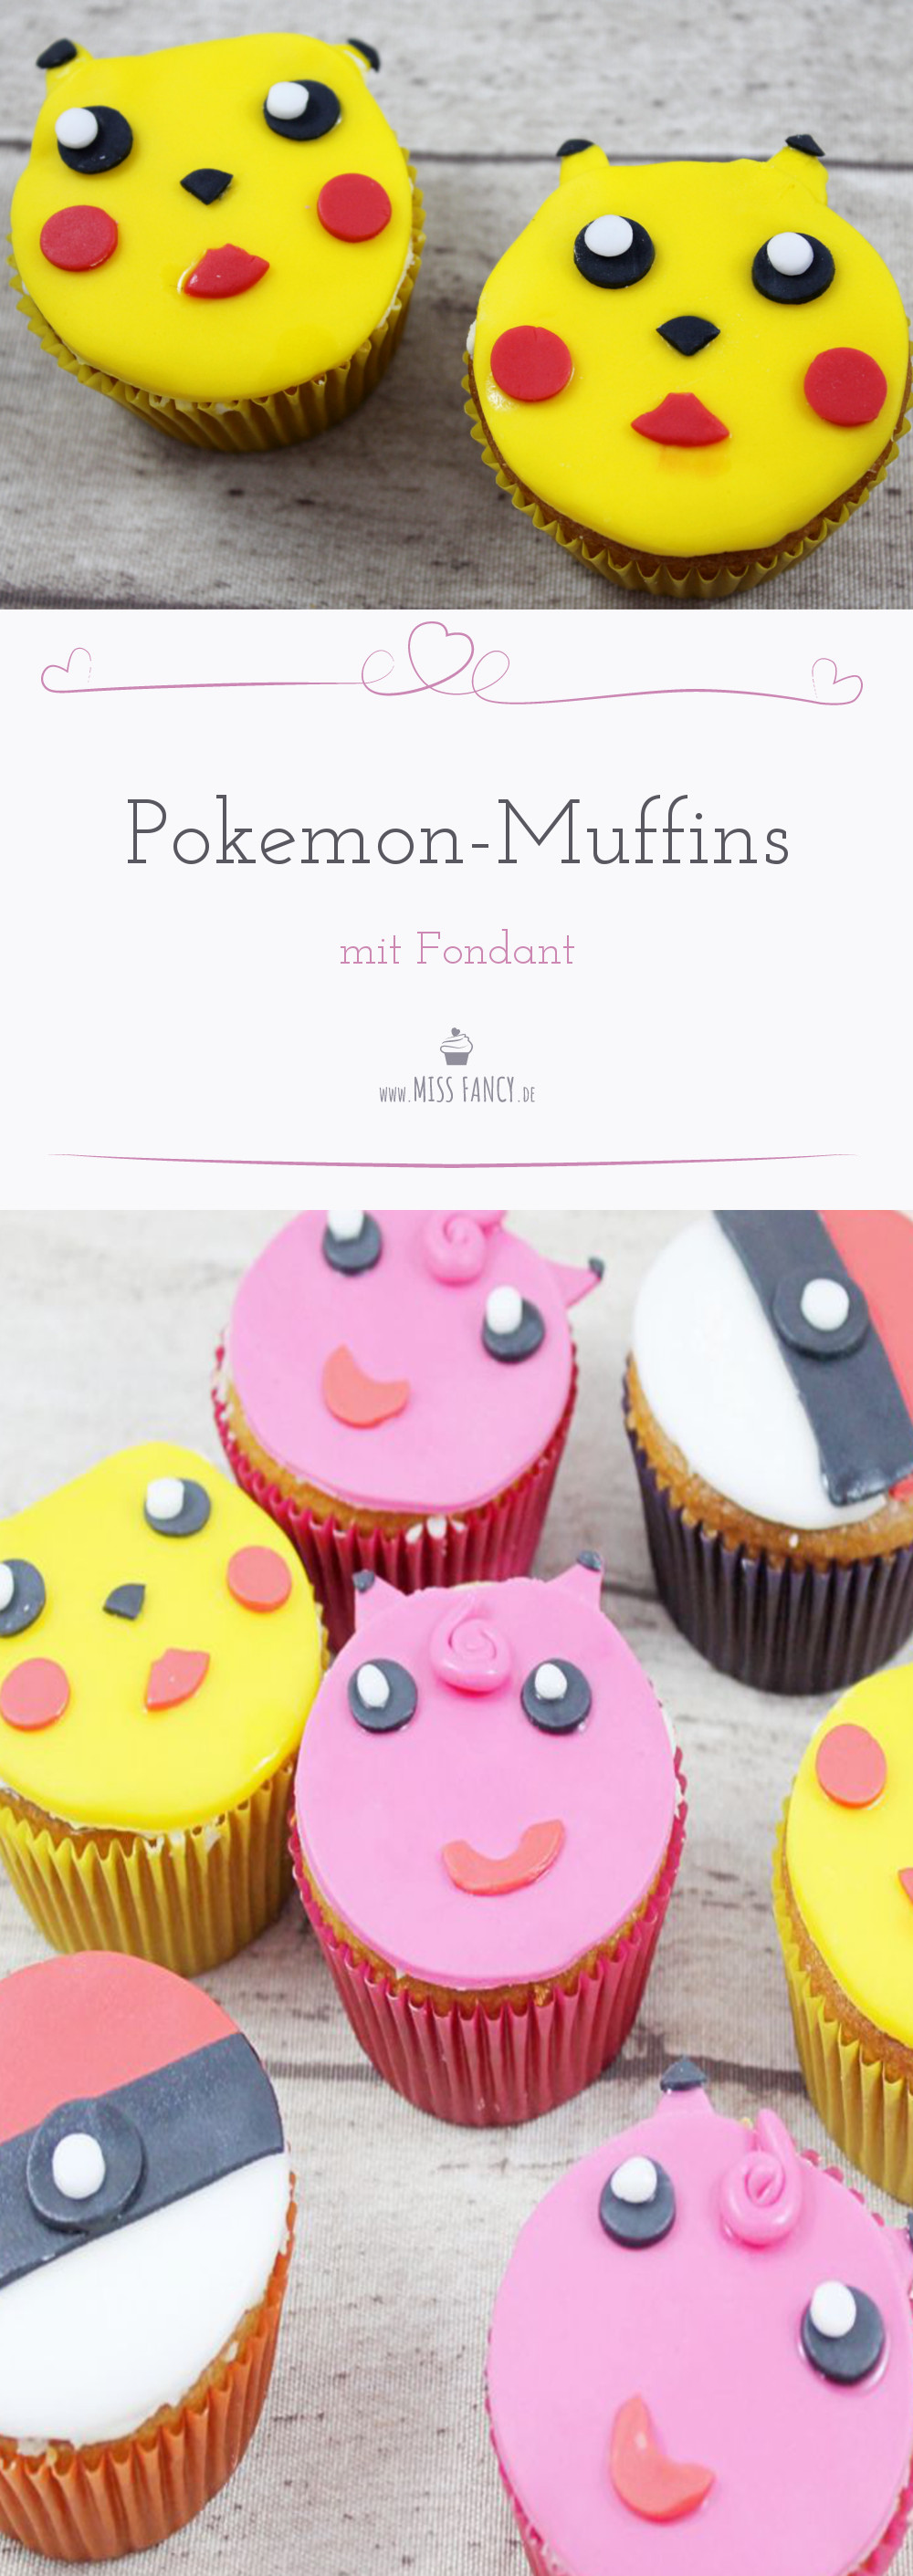 Pikachu, Pummeluff & Co. - Backrezept und Anleitung für Pokemon- und Pokeball-Muffins mit Fondant für eine gelungene Kinder-Geburtstagsparty.